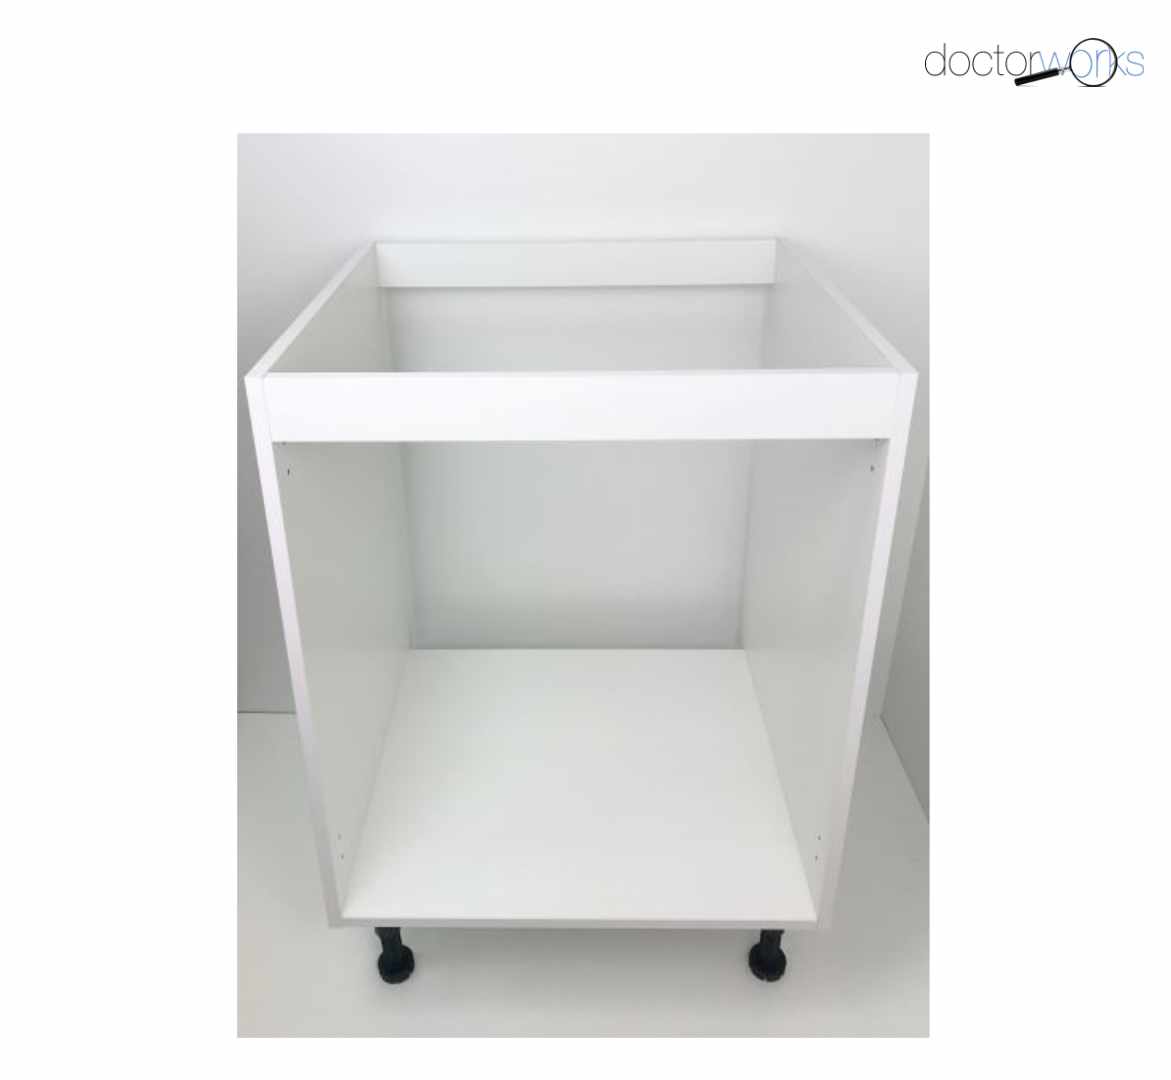 Casco para mueble bajo fregadero para cocina de color blanco de 90 cm